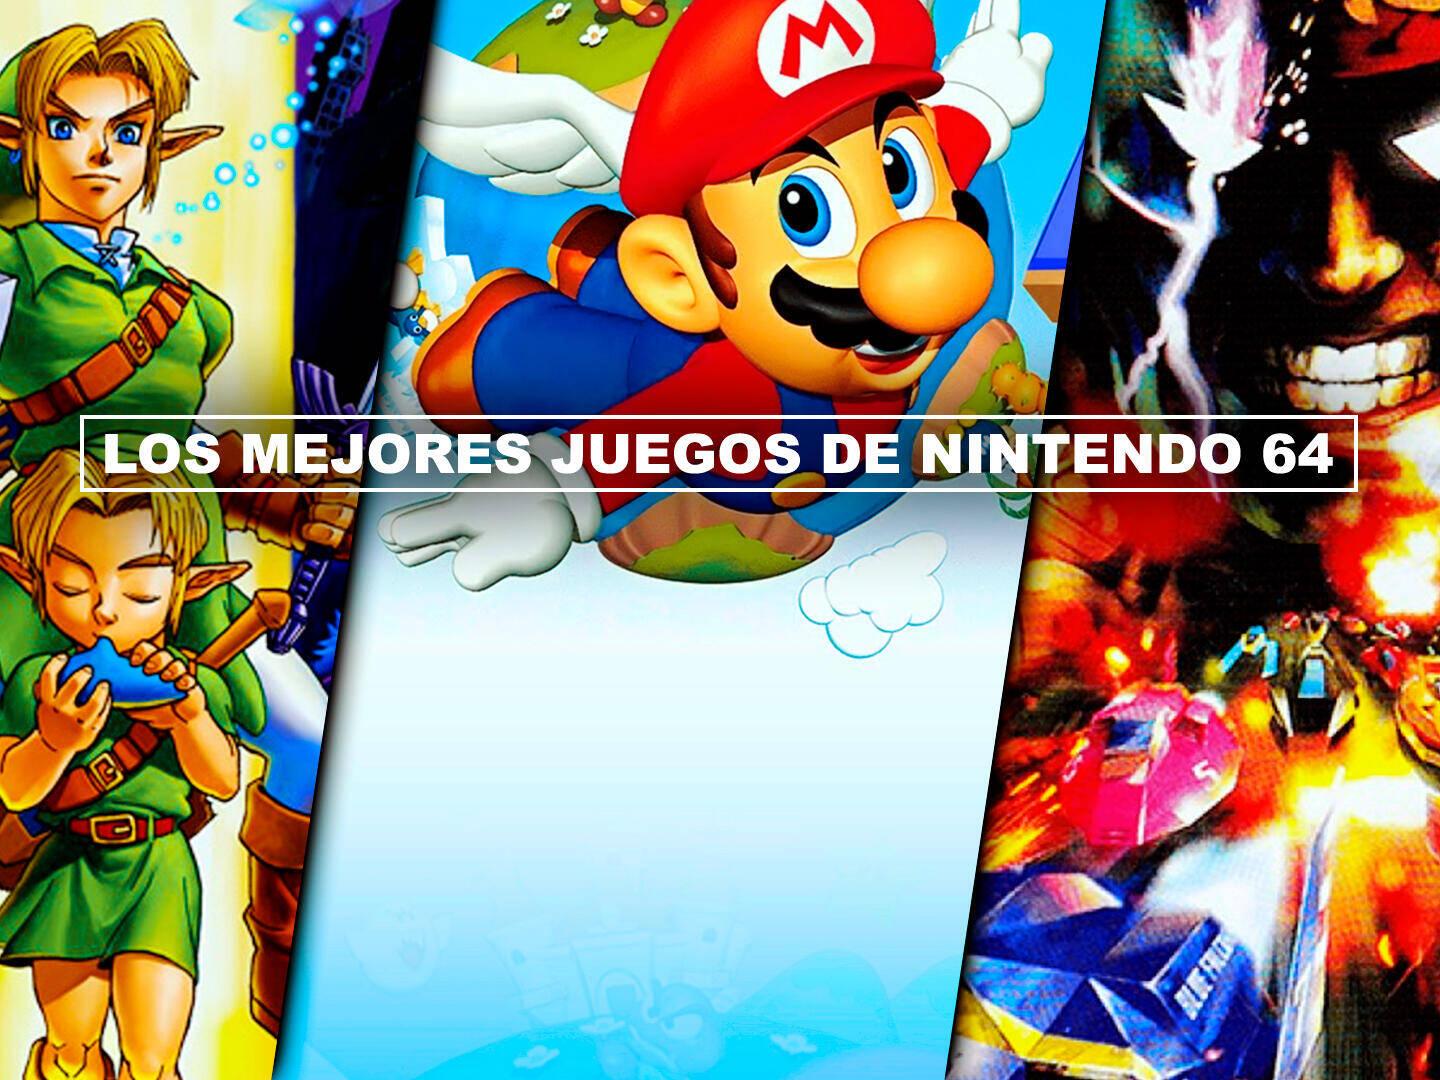 Los mejores juegos de Nintendo 3DS - TOP 20